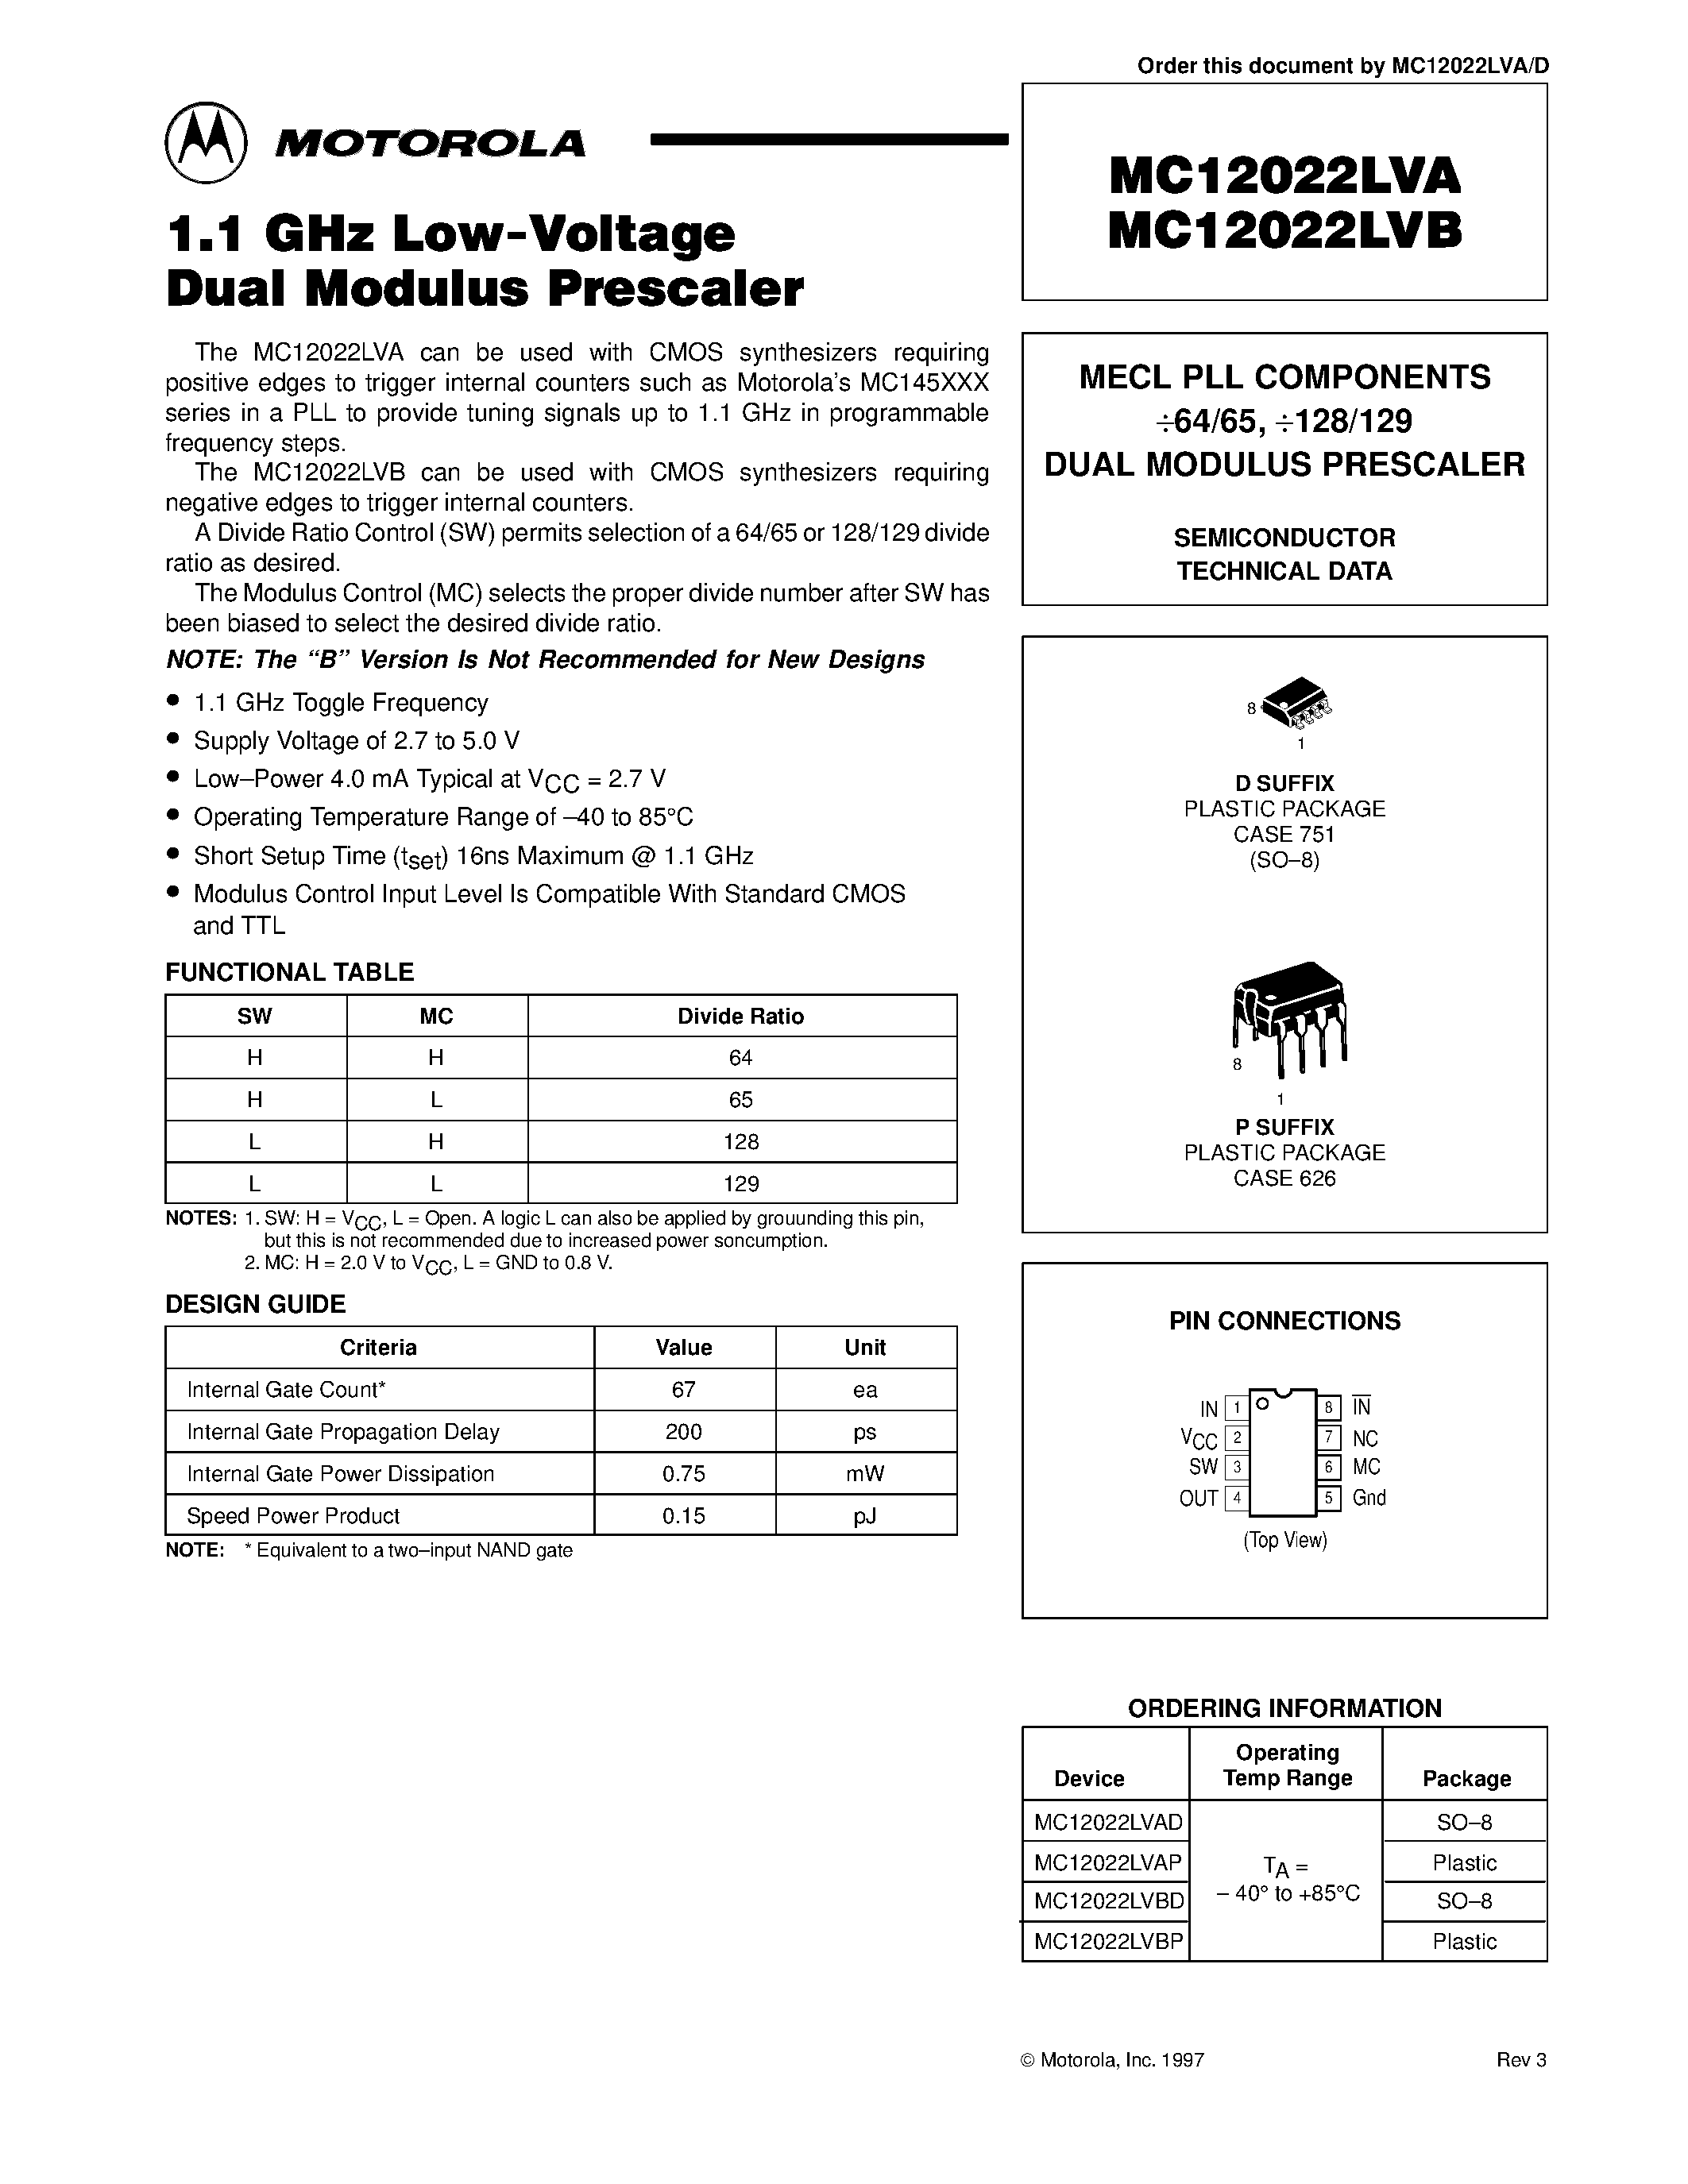 Datasheet MC12022LVBP - MECL PLL COMPONENTS 64/65 / 128/129 DUAL MODULUS PRESCALER page 1